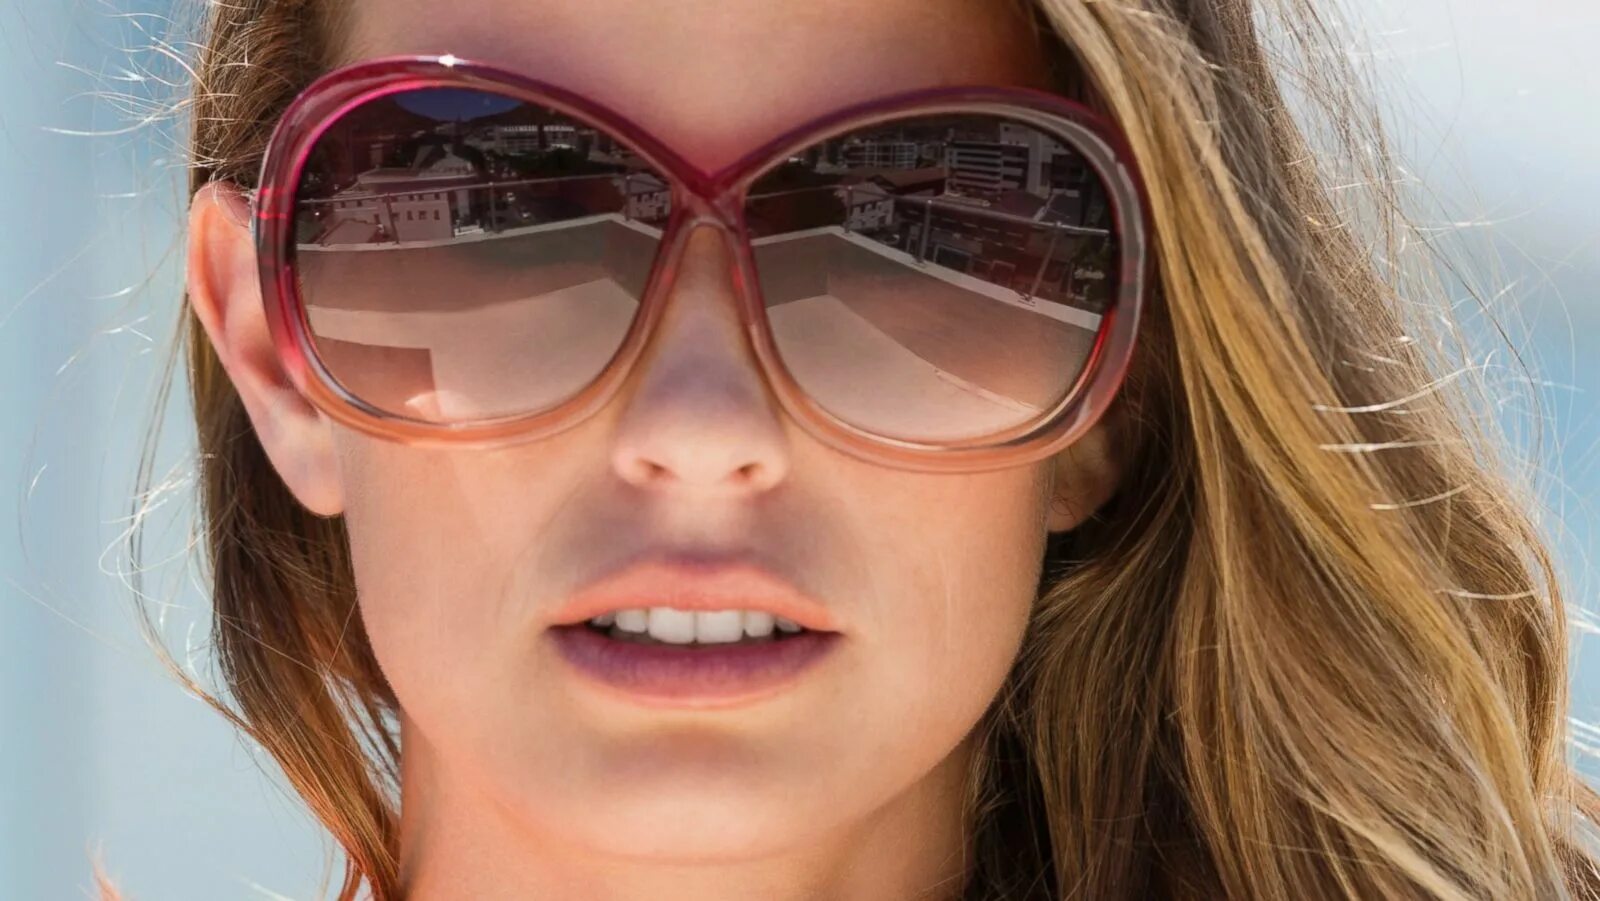 Your sunglasses. Очки ray ban солнцезащитные Авиаторы 100%UV Protection. Очки ray ban Aviator на лице прозрачные. Имиджи ray ban. Очки с временем.